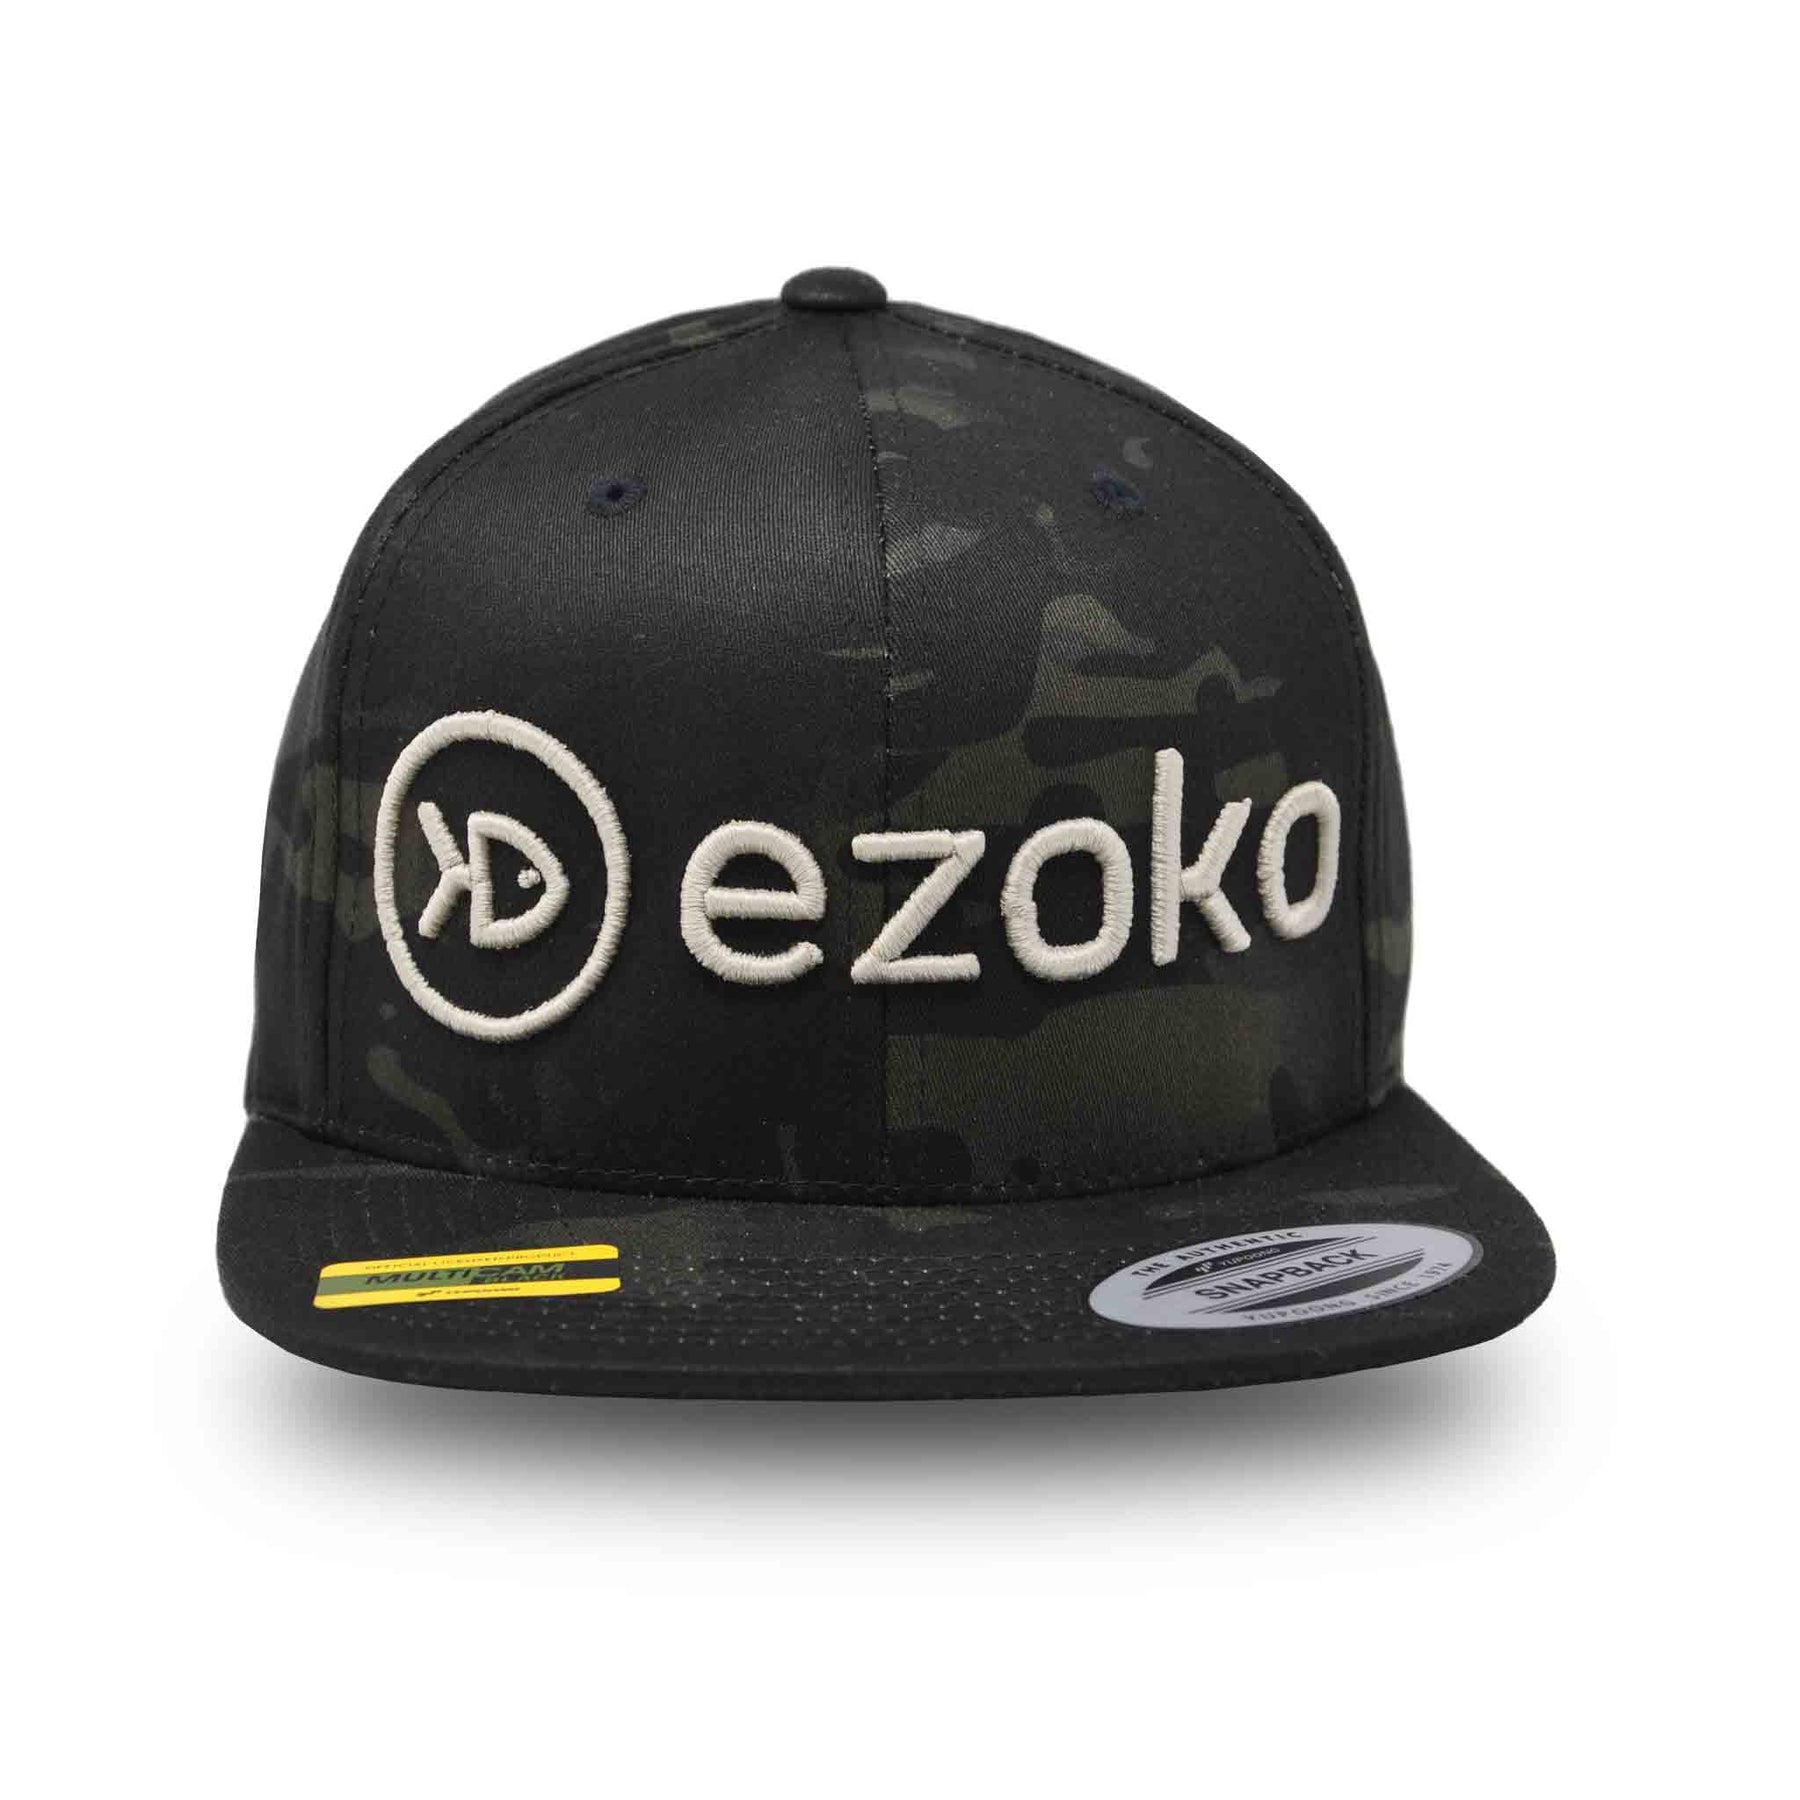 Ezoko Classics YUPOONG Flat Brim Cap MultiCam Black Grey Hats